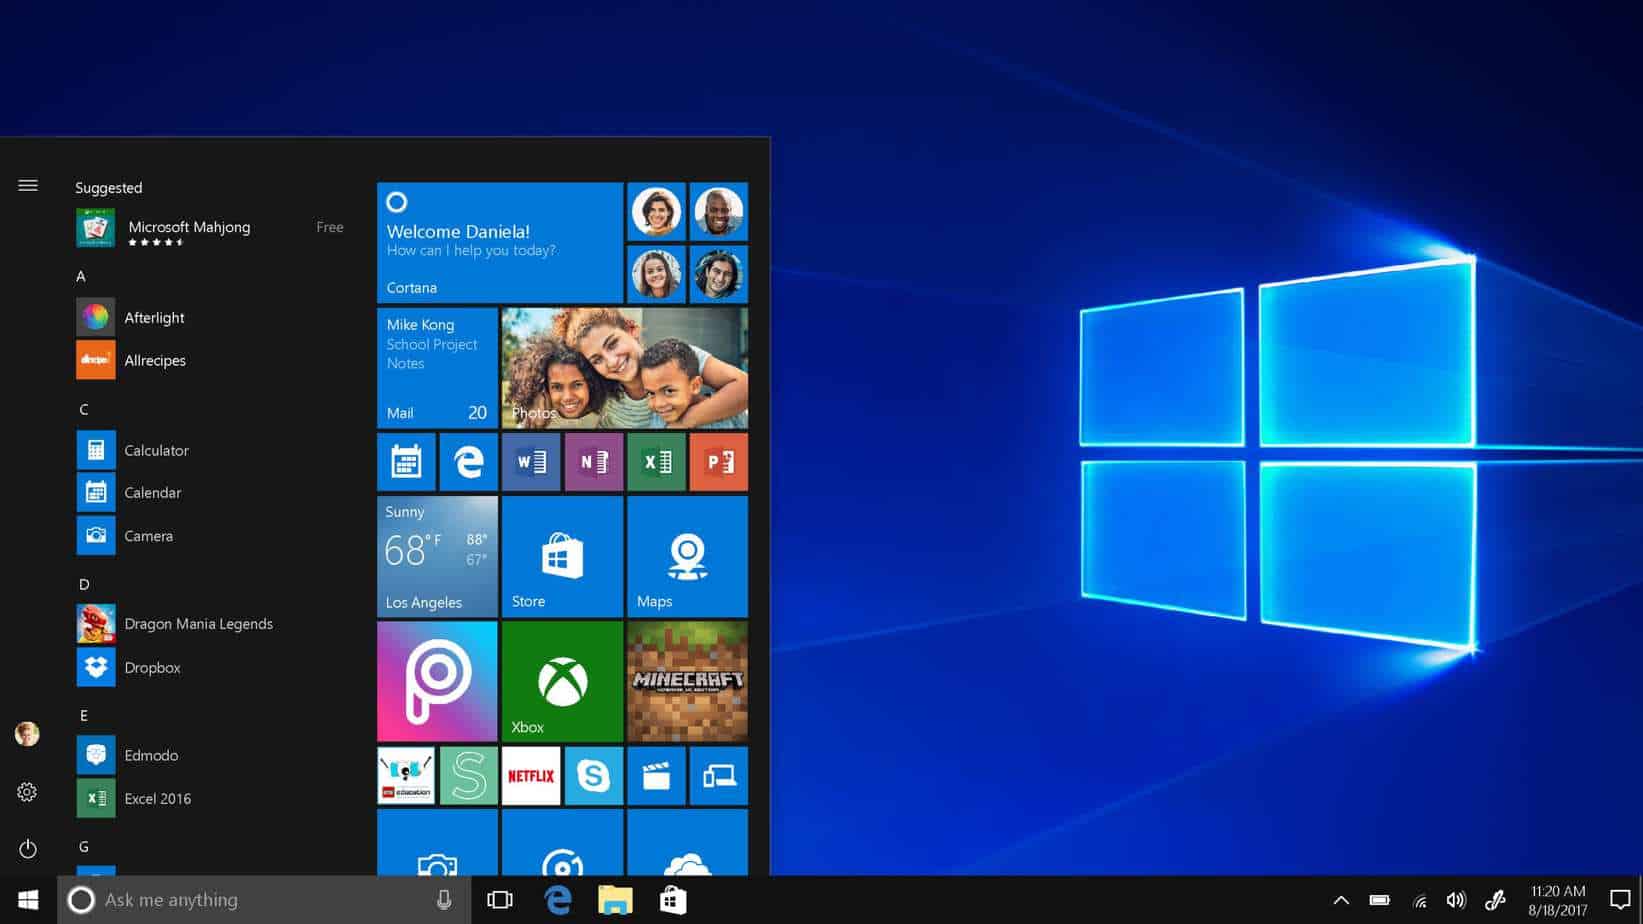 Windows 10 S Mode